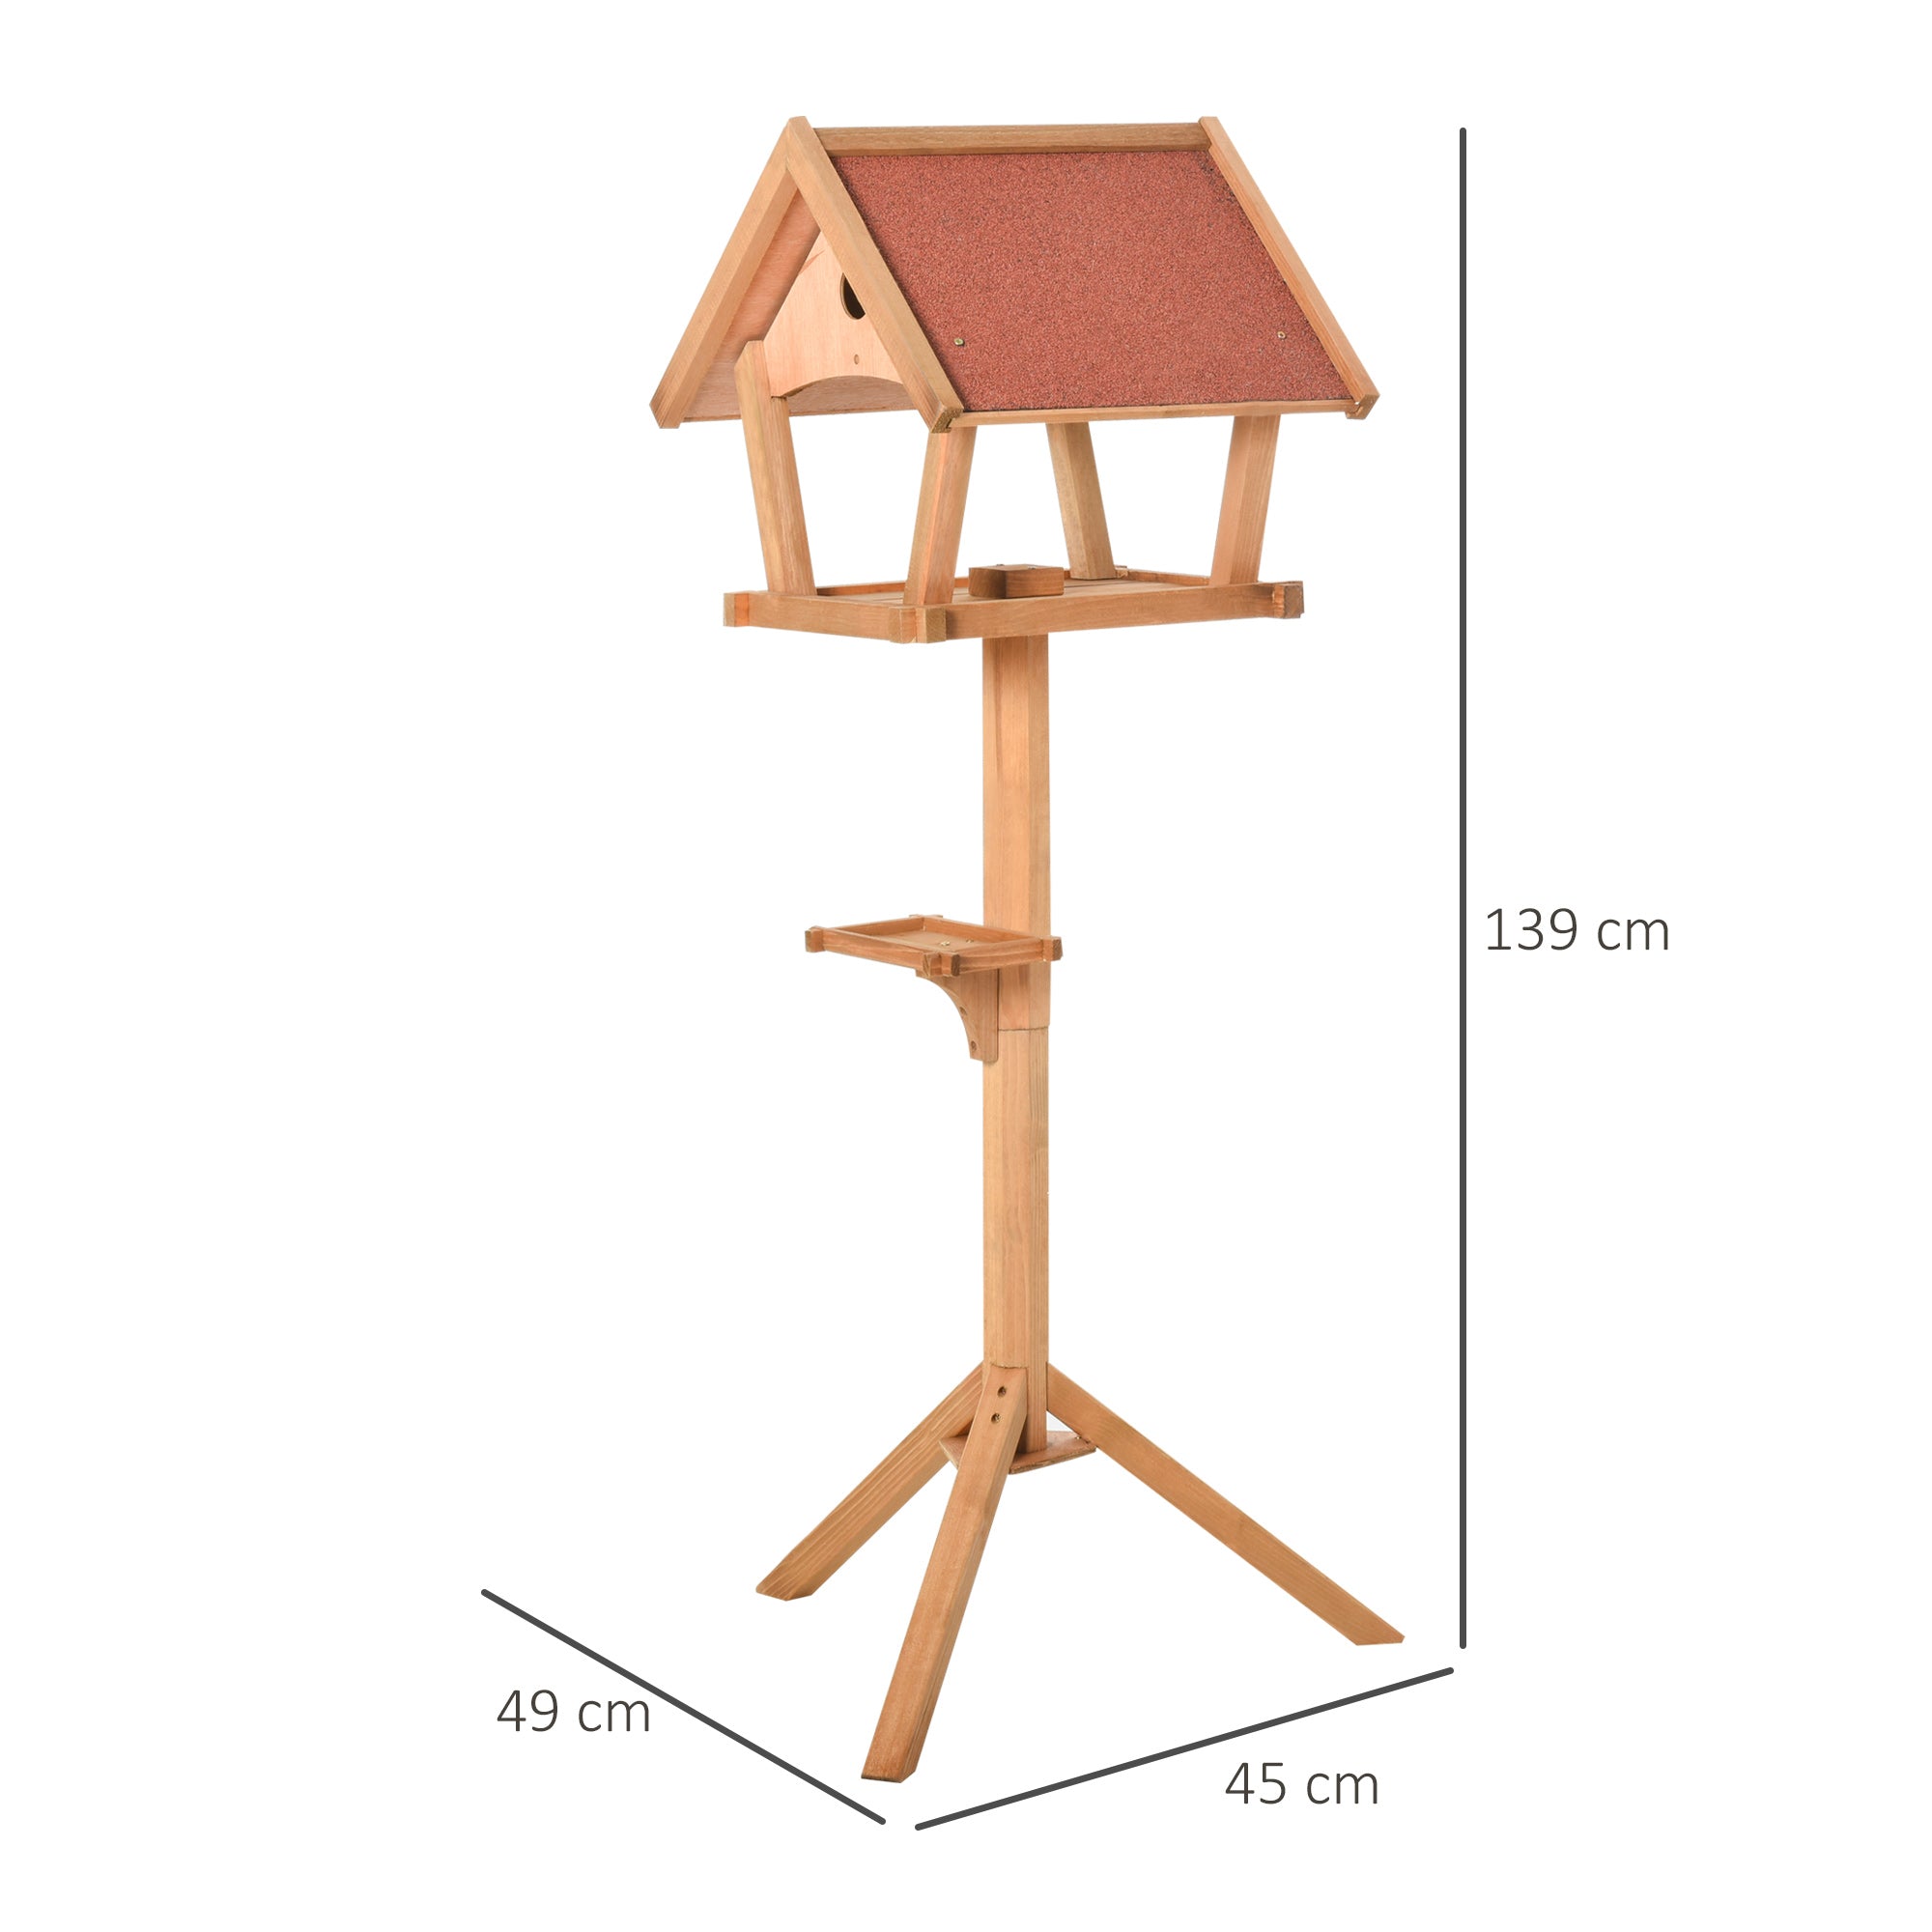 Wooden Bird Feeder Stand for Garden Pre-cut Weather Resistant 49 x 45 x 139cm